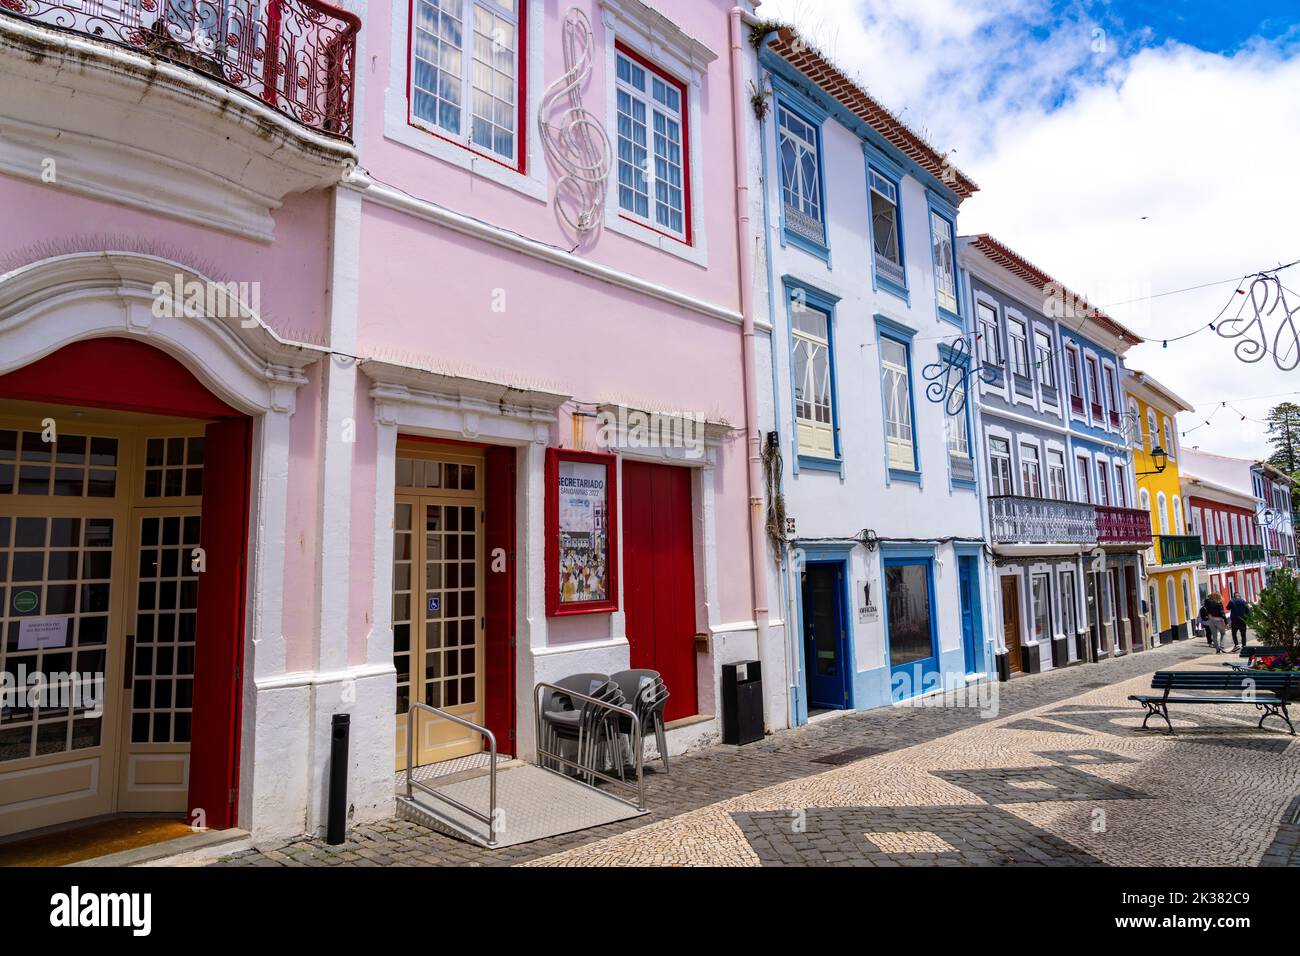 La fachada rosa del Teatro Angrense, un teatro artístico construido en los años 1850 en Angra do Heroismo, Isla Terceira, Azores, Portugal. Foto de stock